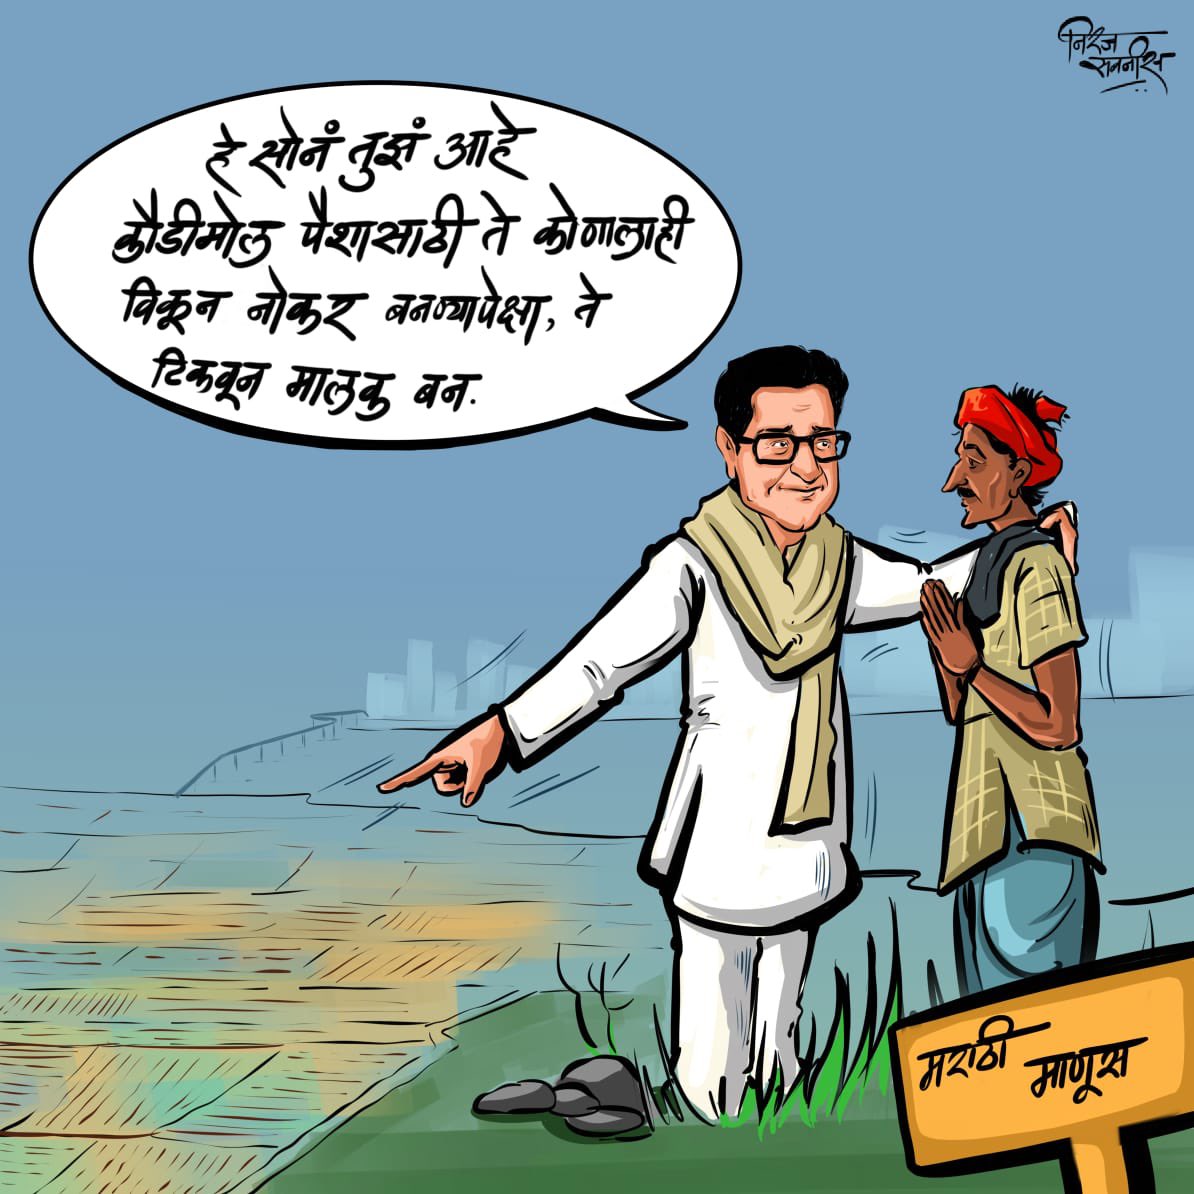 दूरदृष्टि असलेला नेता...🚩
सन्माननिय राजसाहेब...

#MNS #mnsadhikrut #RajSahebThackeray #AmitSahebThackeray #Sharmila_Thackeray